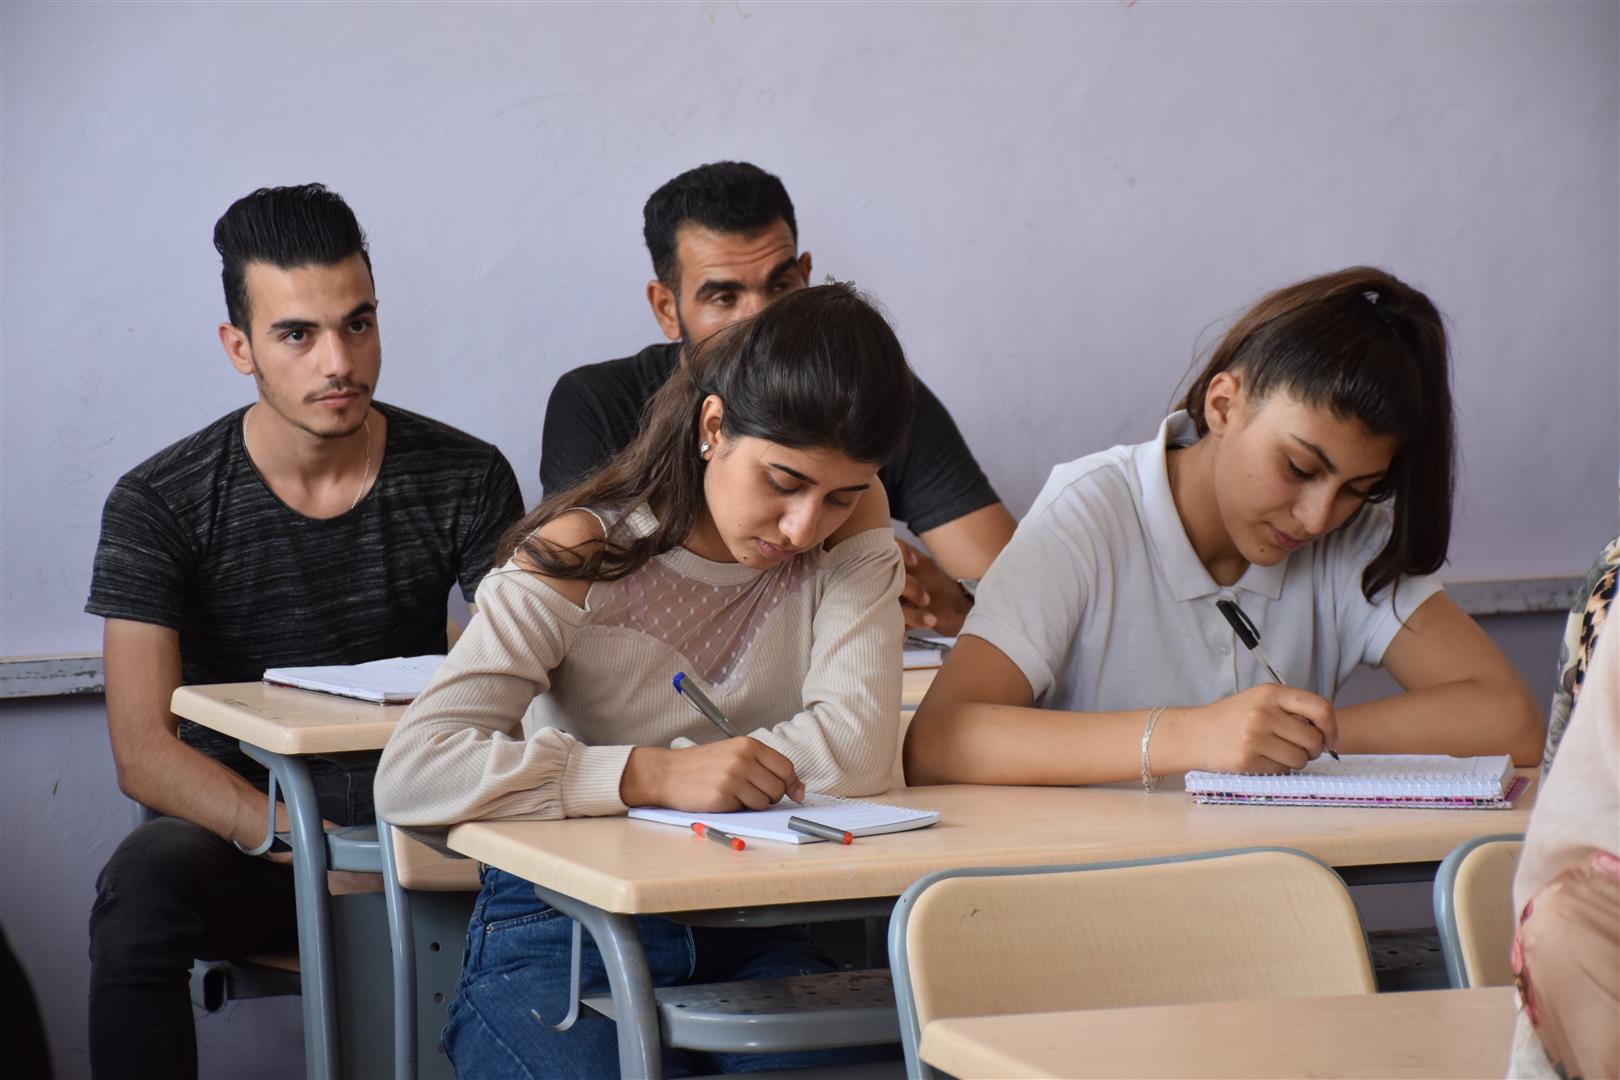 المجلس الاجتماعي الأرمني يفتتح دورات لتعلم اللغة الأرمنية في شمال شرق سوريا